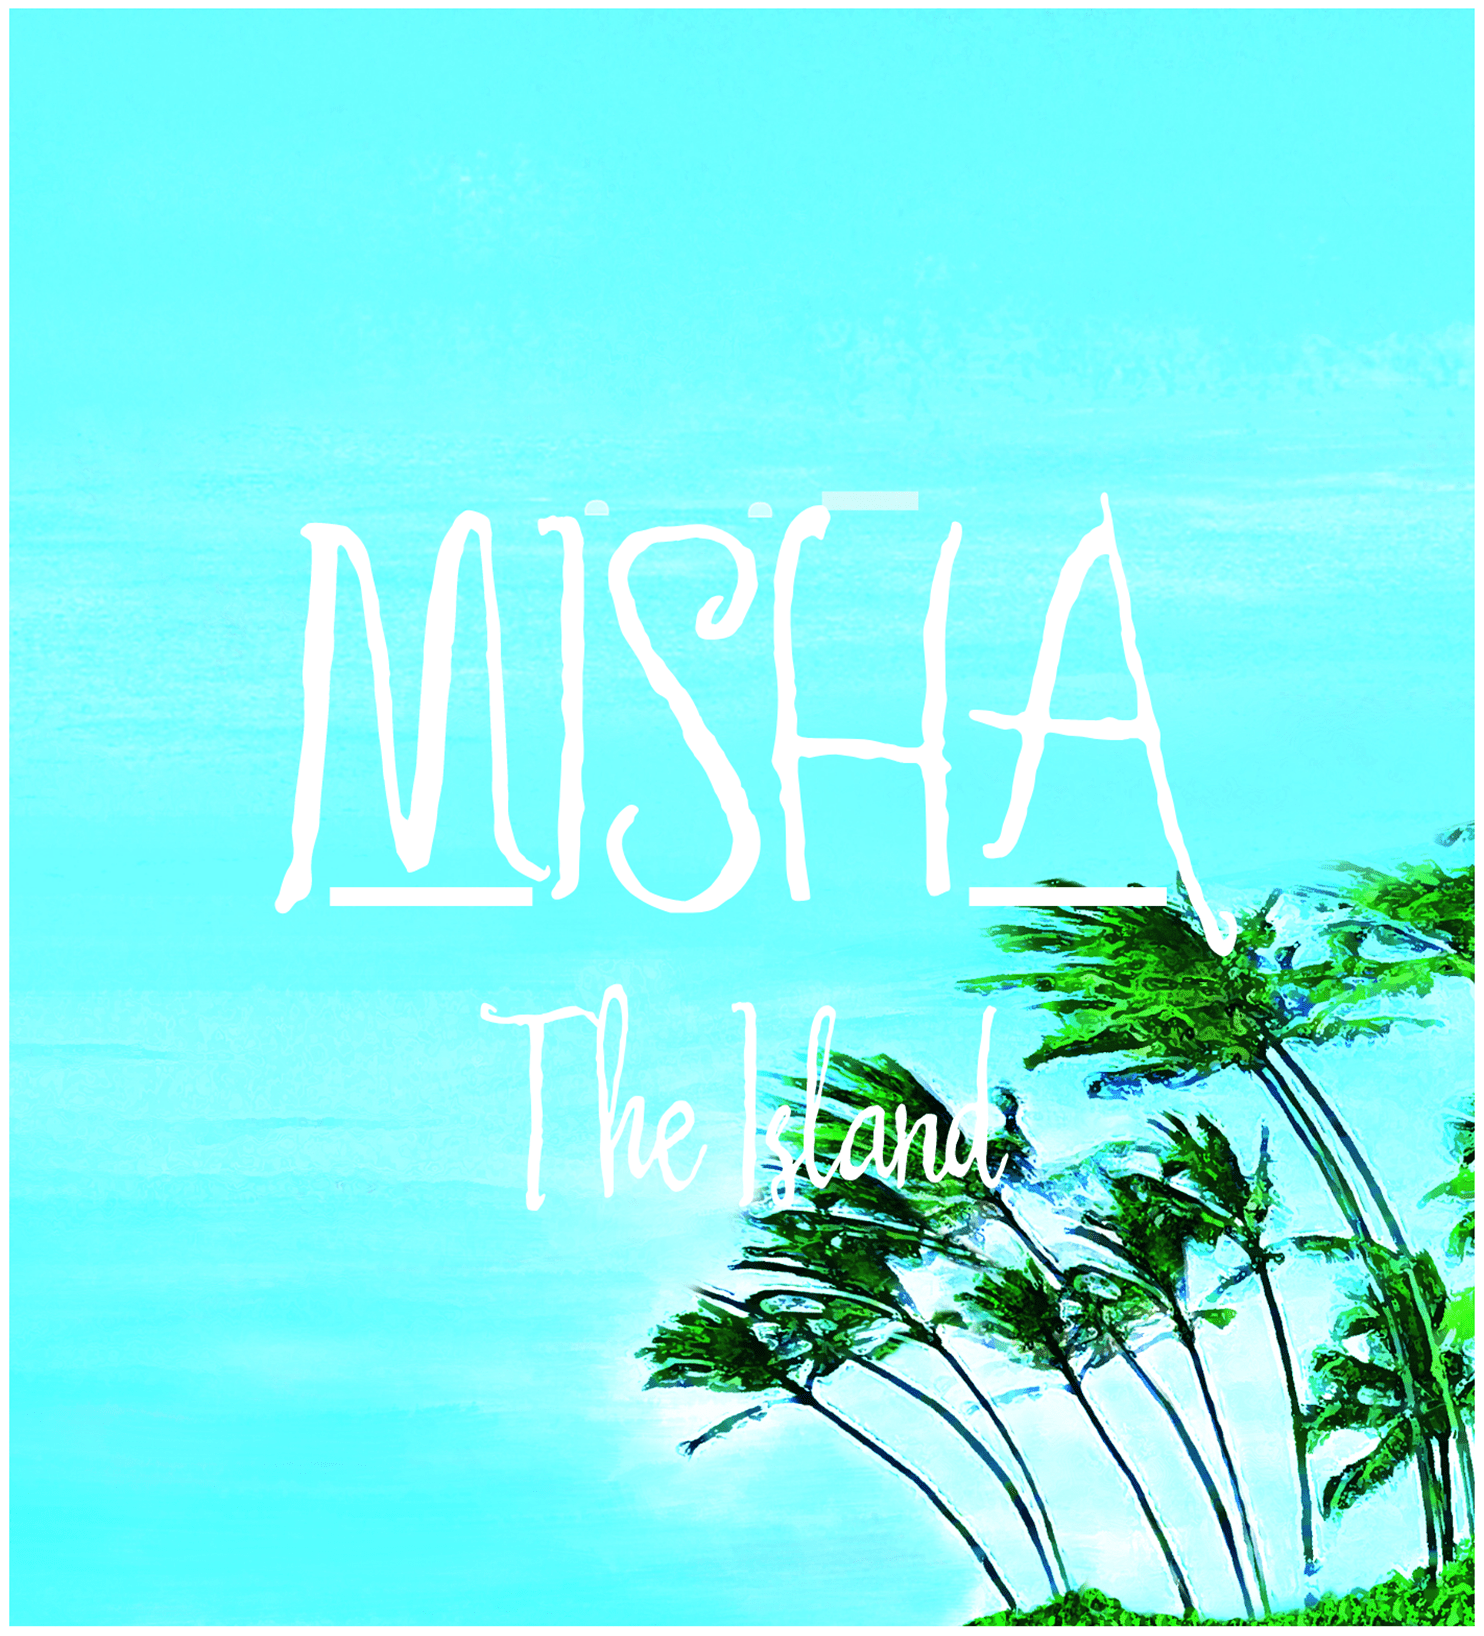 Misha The Island Image